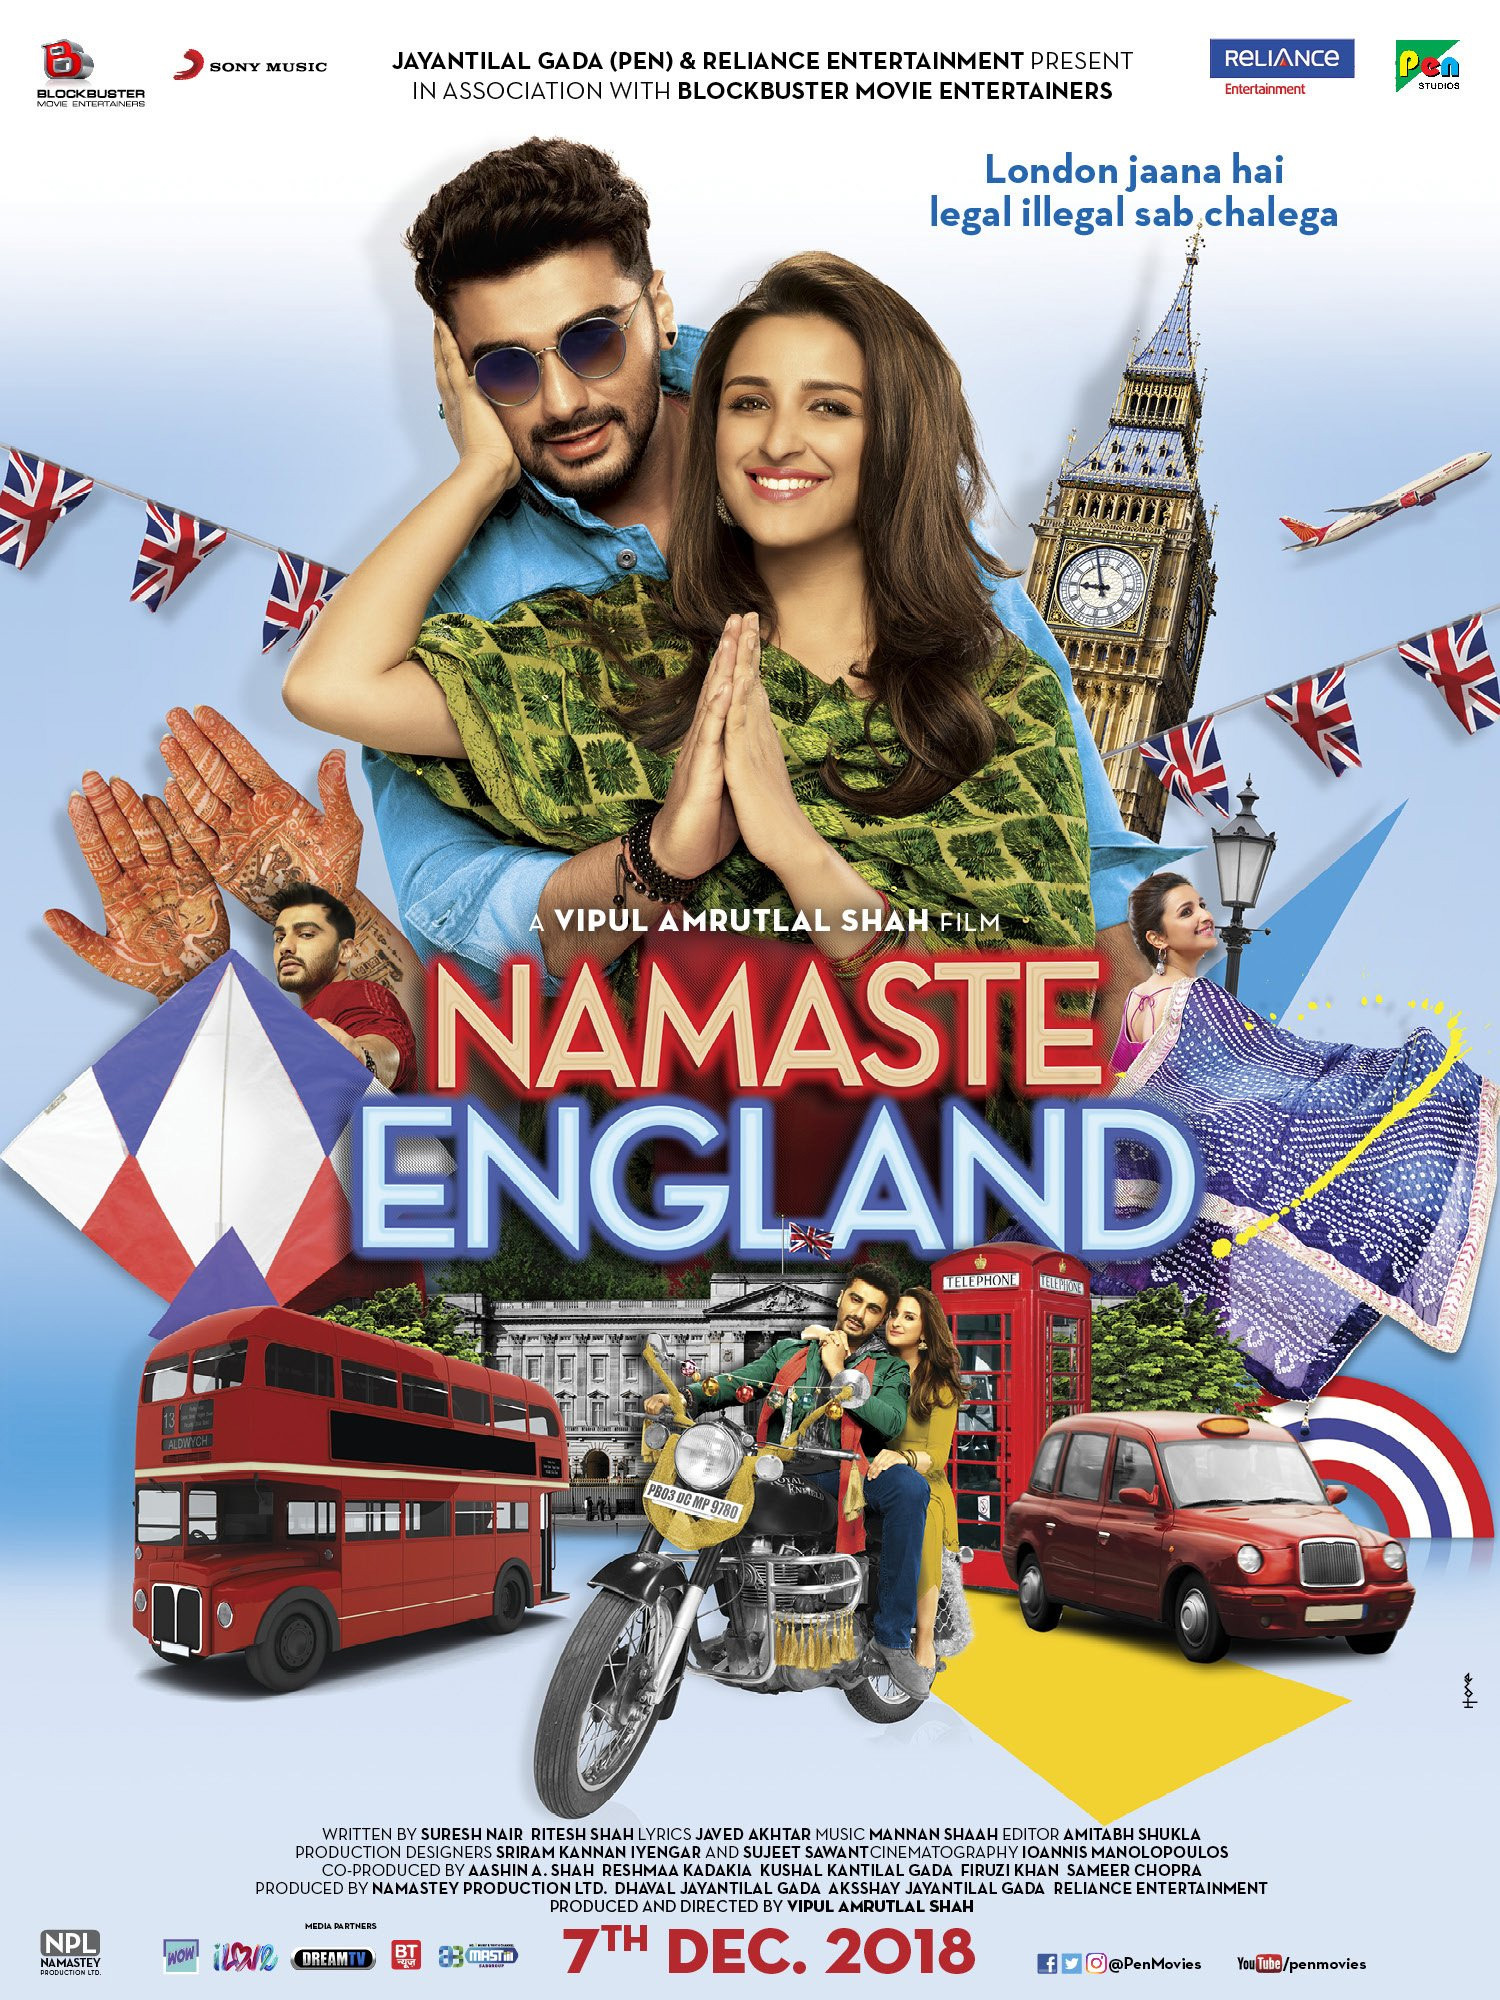 Mega Sized Movie Poster Image for Namaste England (#4 of 6)